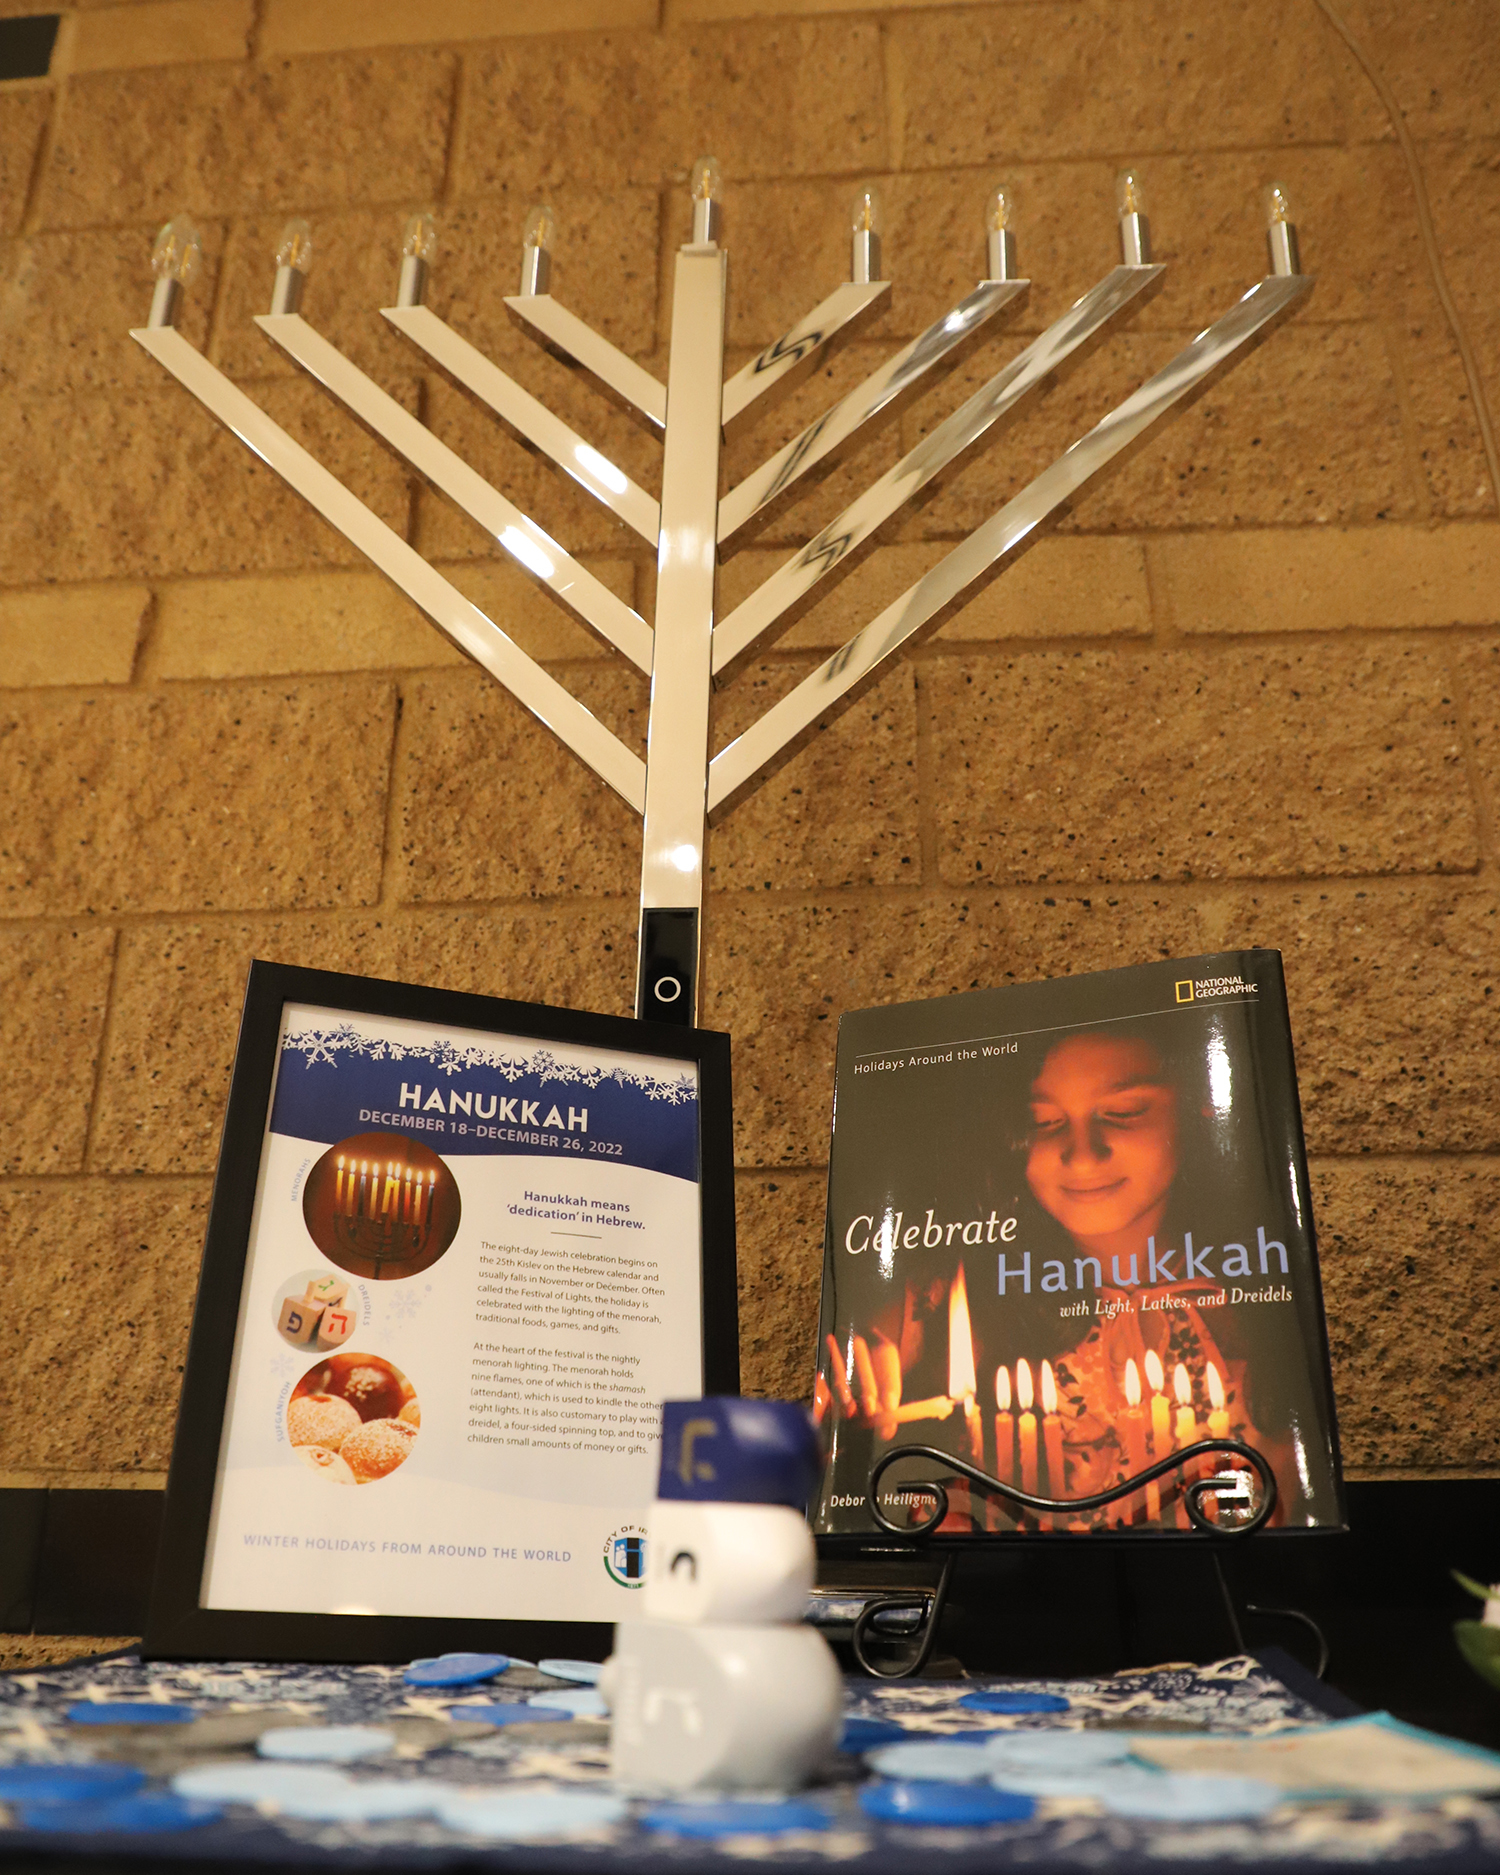 Hanukkah display